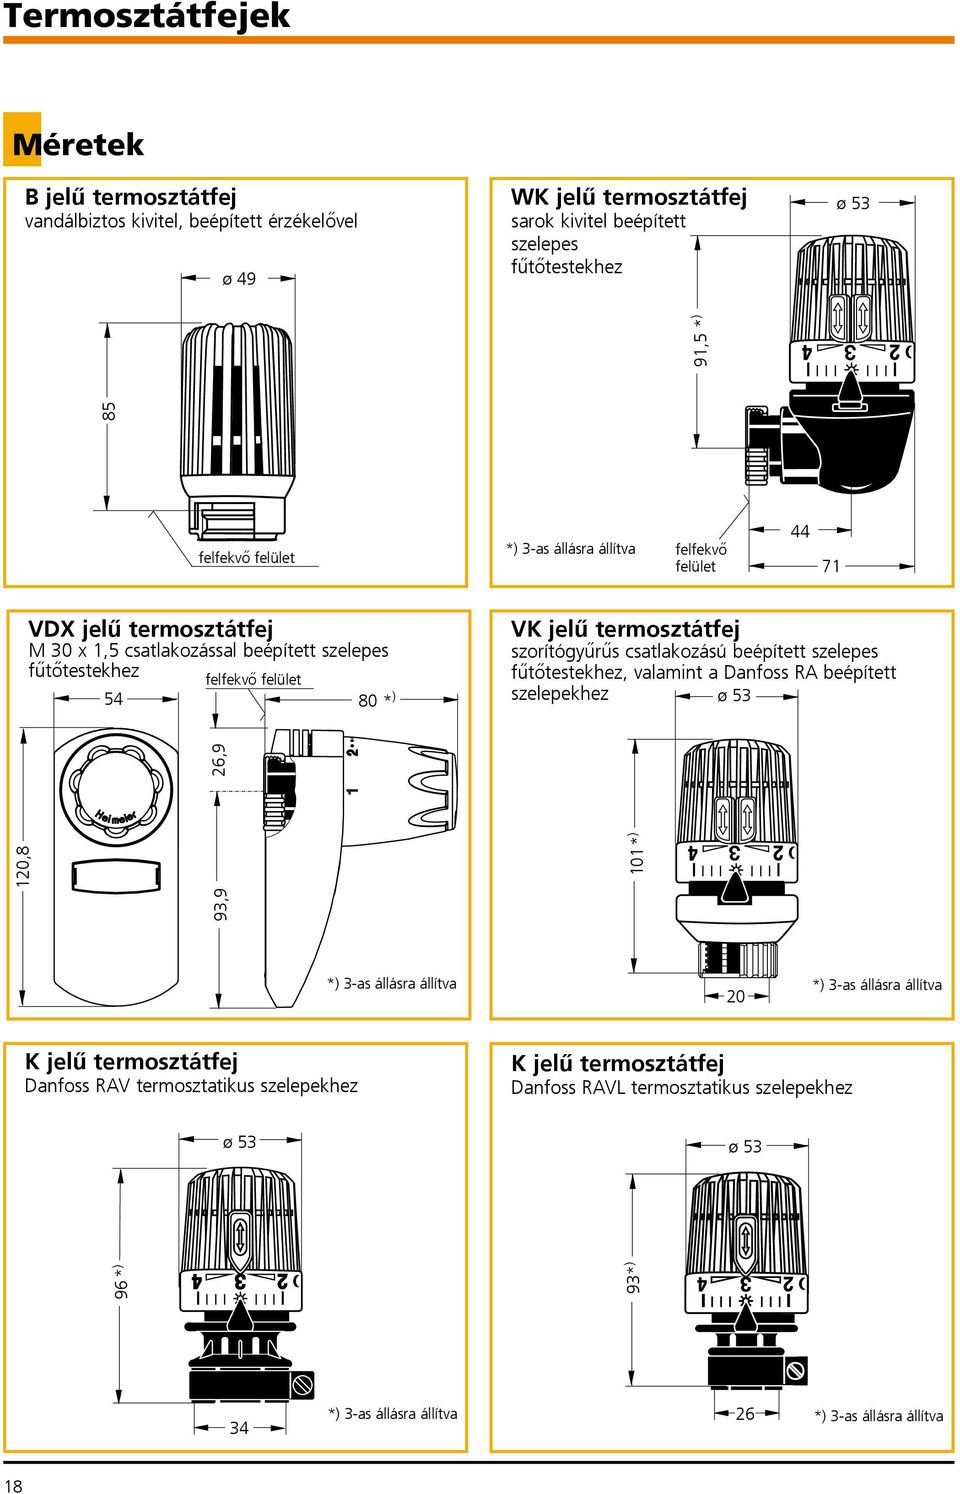 * ) 20 Kjelűtermosztátfej Danfoss RAV termosztatikus szelepekhez Kjelűtermosztátfej Danfoss RAVL termosztatikus szelepekhez ø 5 ø 5 96 * ) 9* ) 91,5 *